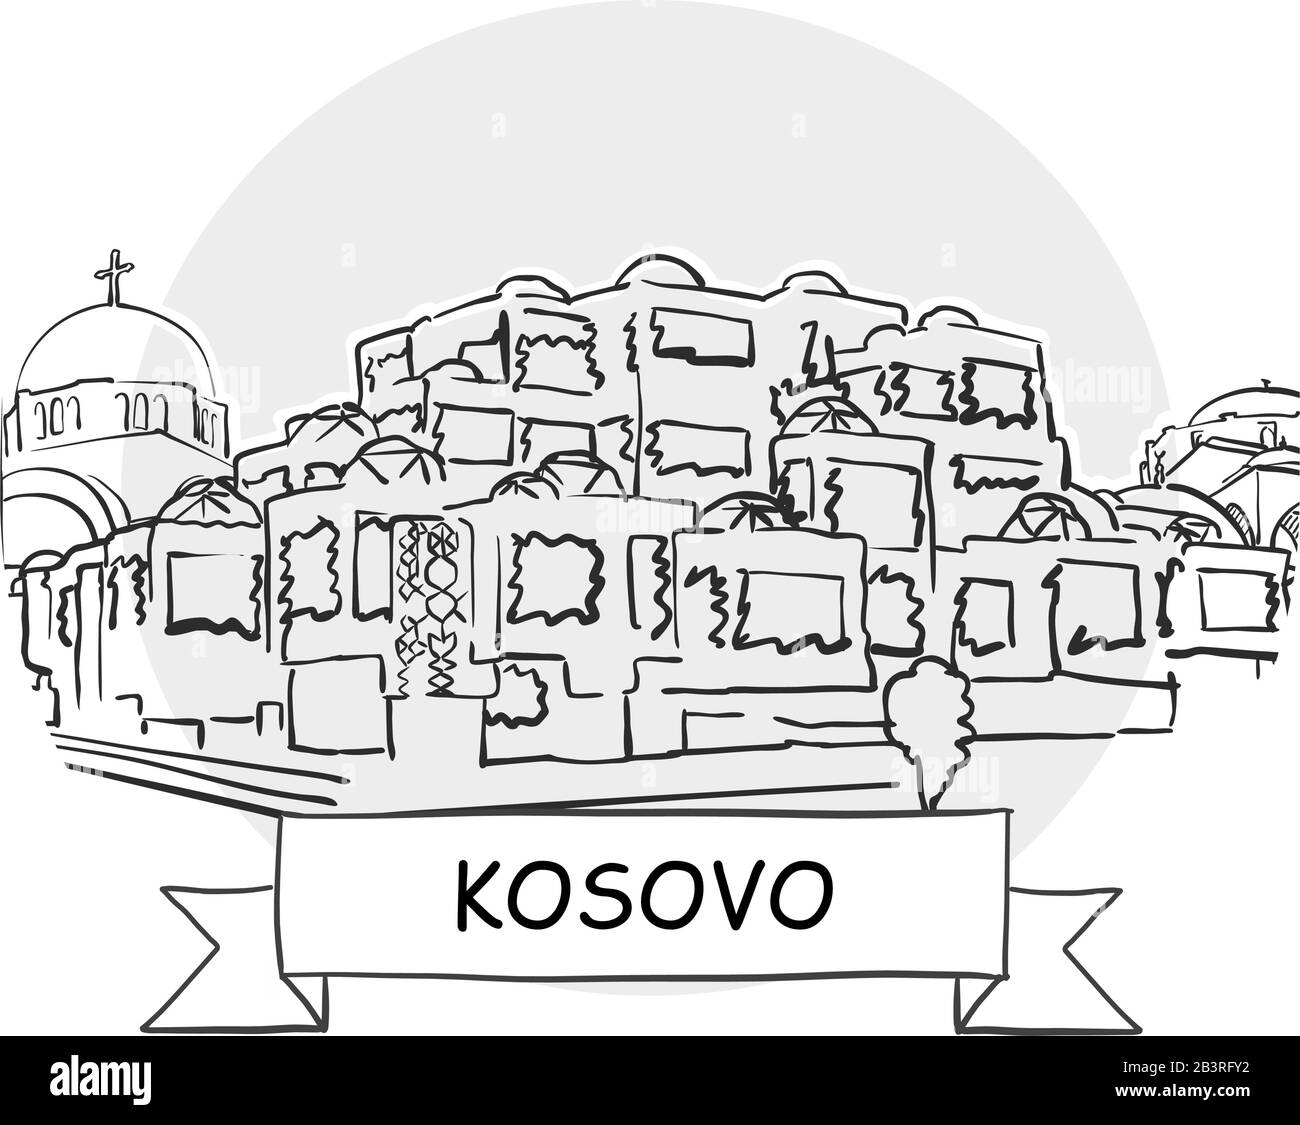 Kosovo Tratto A Mano Urban Vector Sign. Illustrazione Della Linea Nera Con Barra Multifunzione E Titolo. Illustrazione Vettoriale